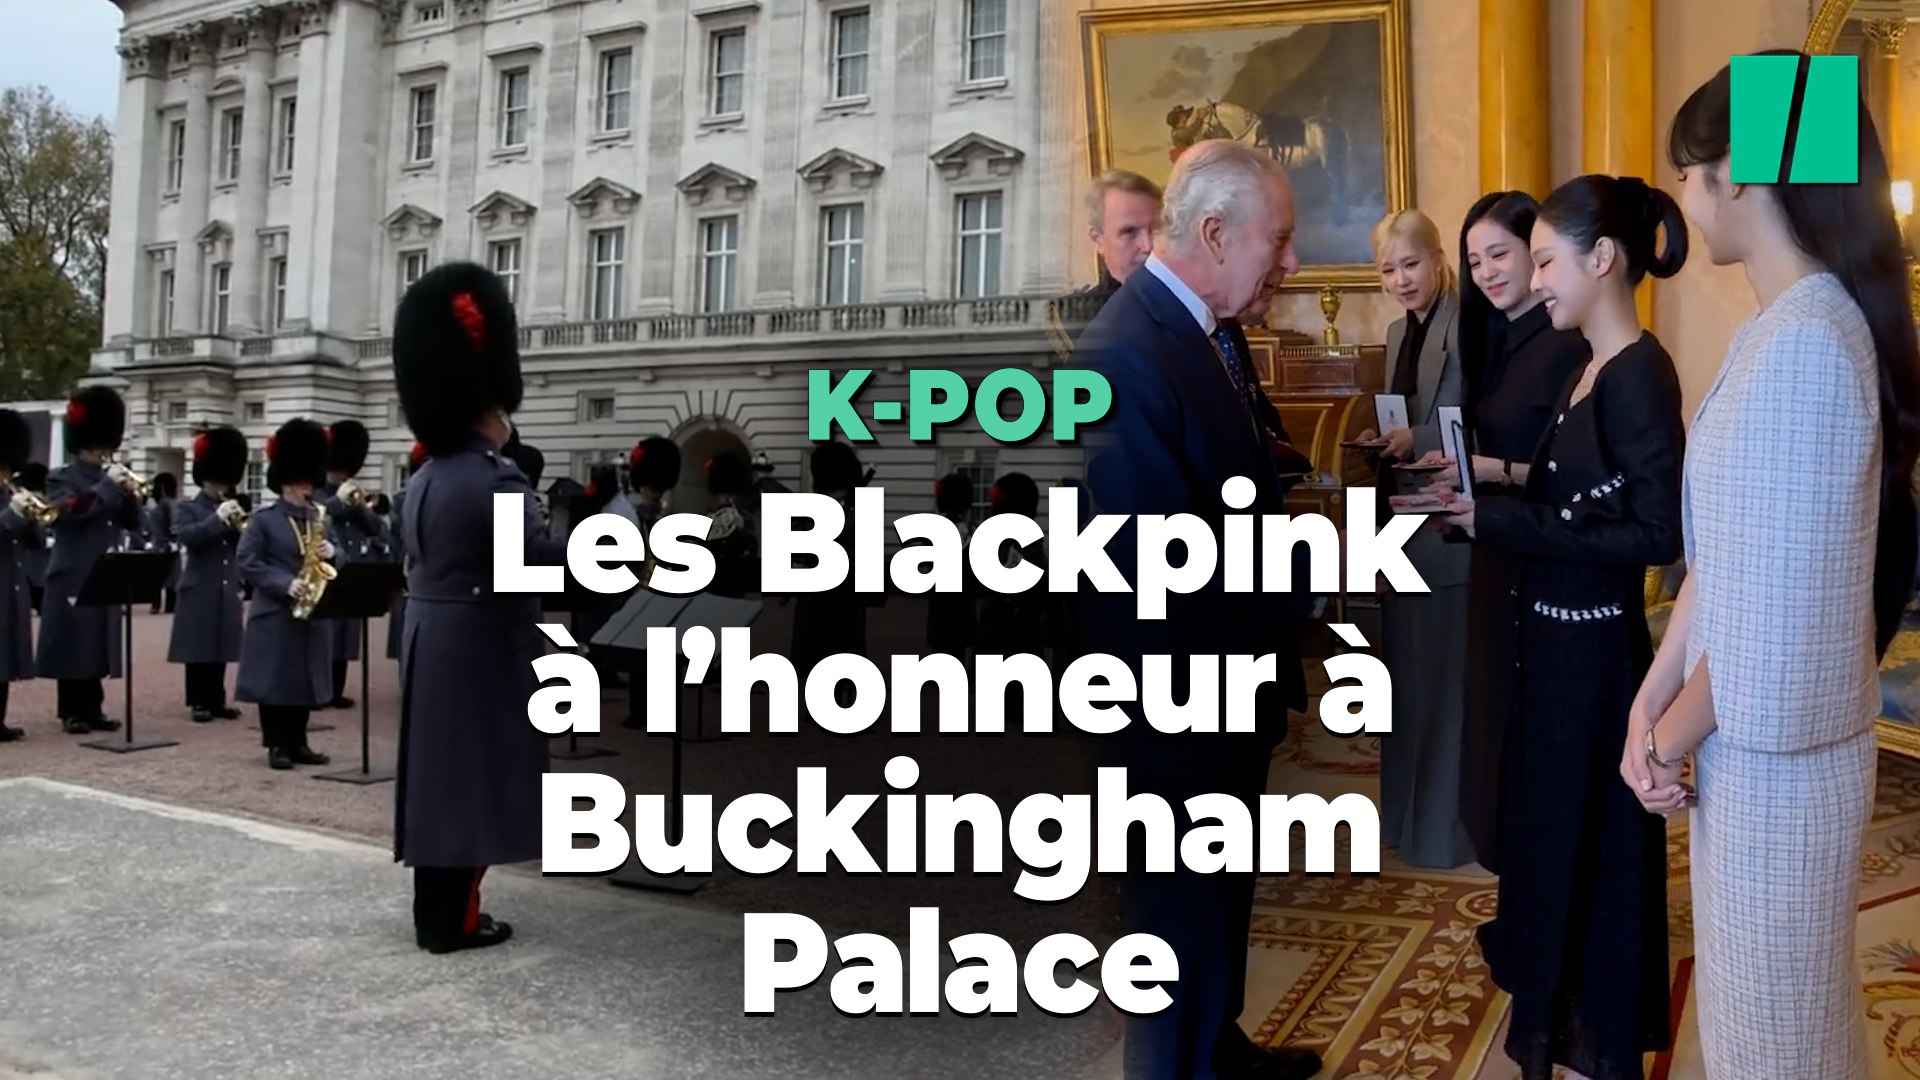 La relève de la garde à Buckingham Palace s'est faite sur une chanson des  BlackPink - Vidéo Dailymotion